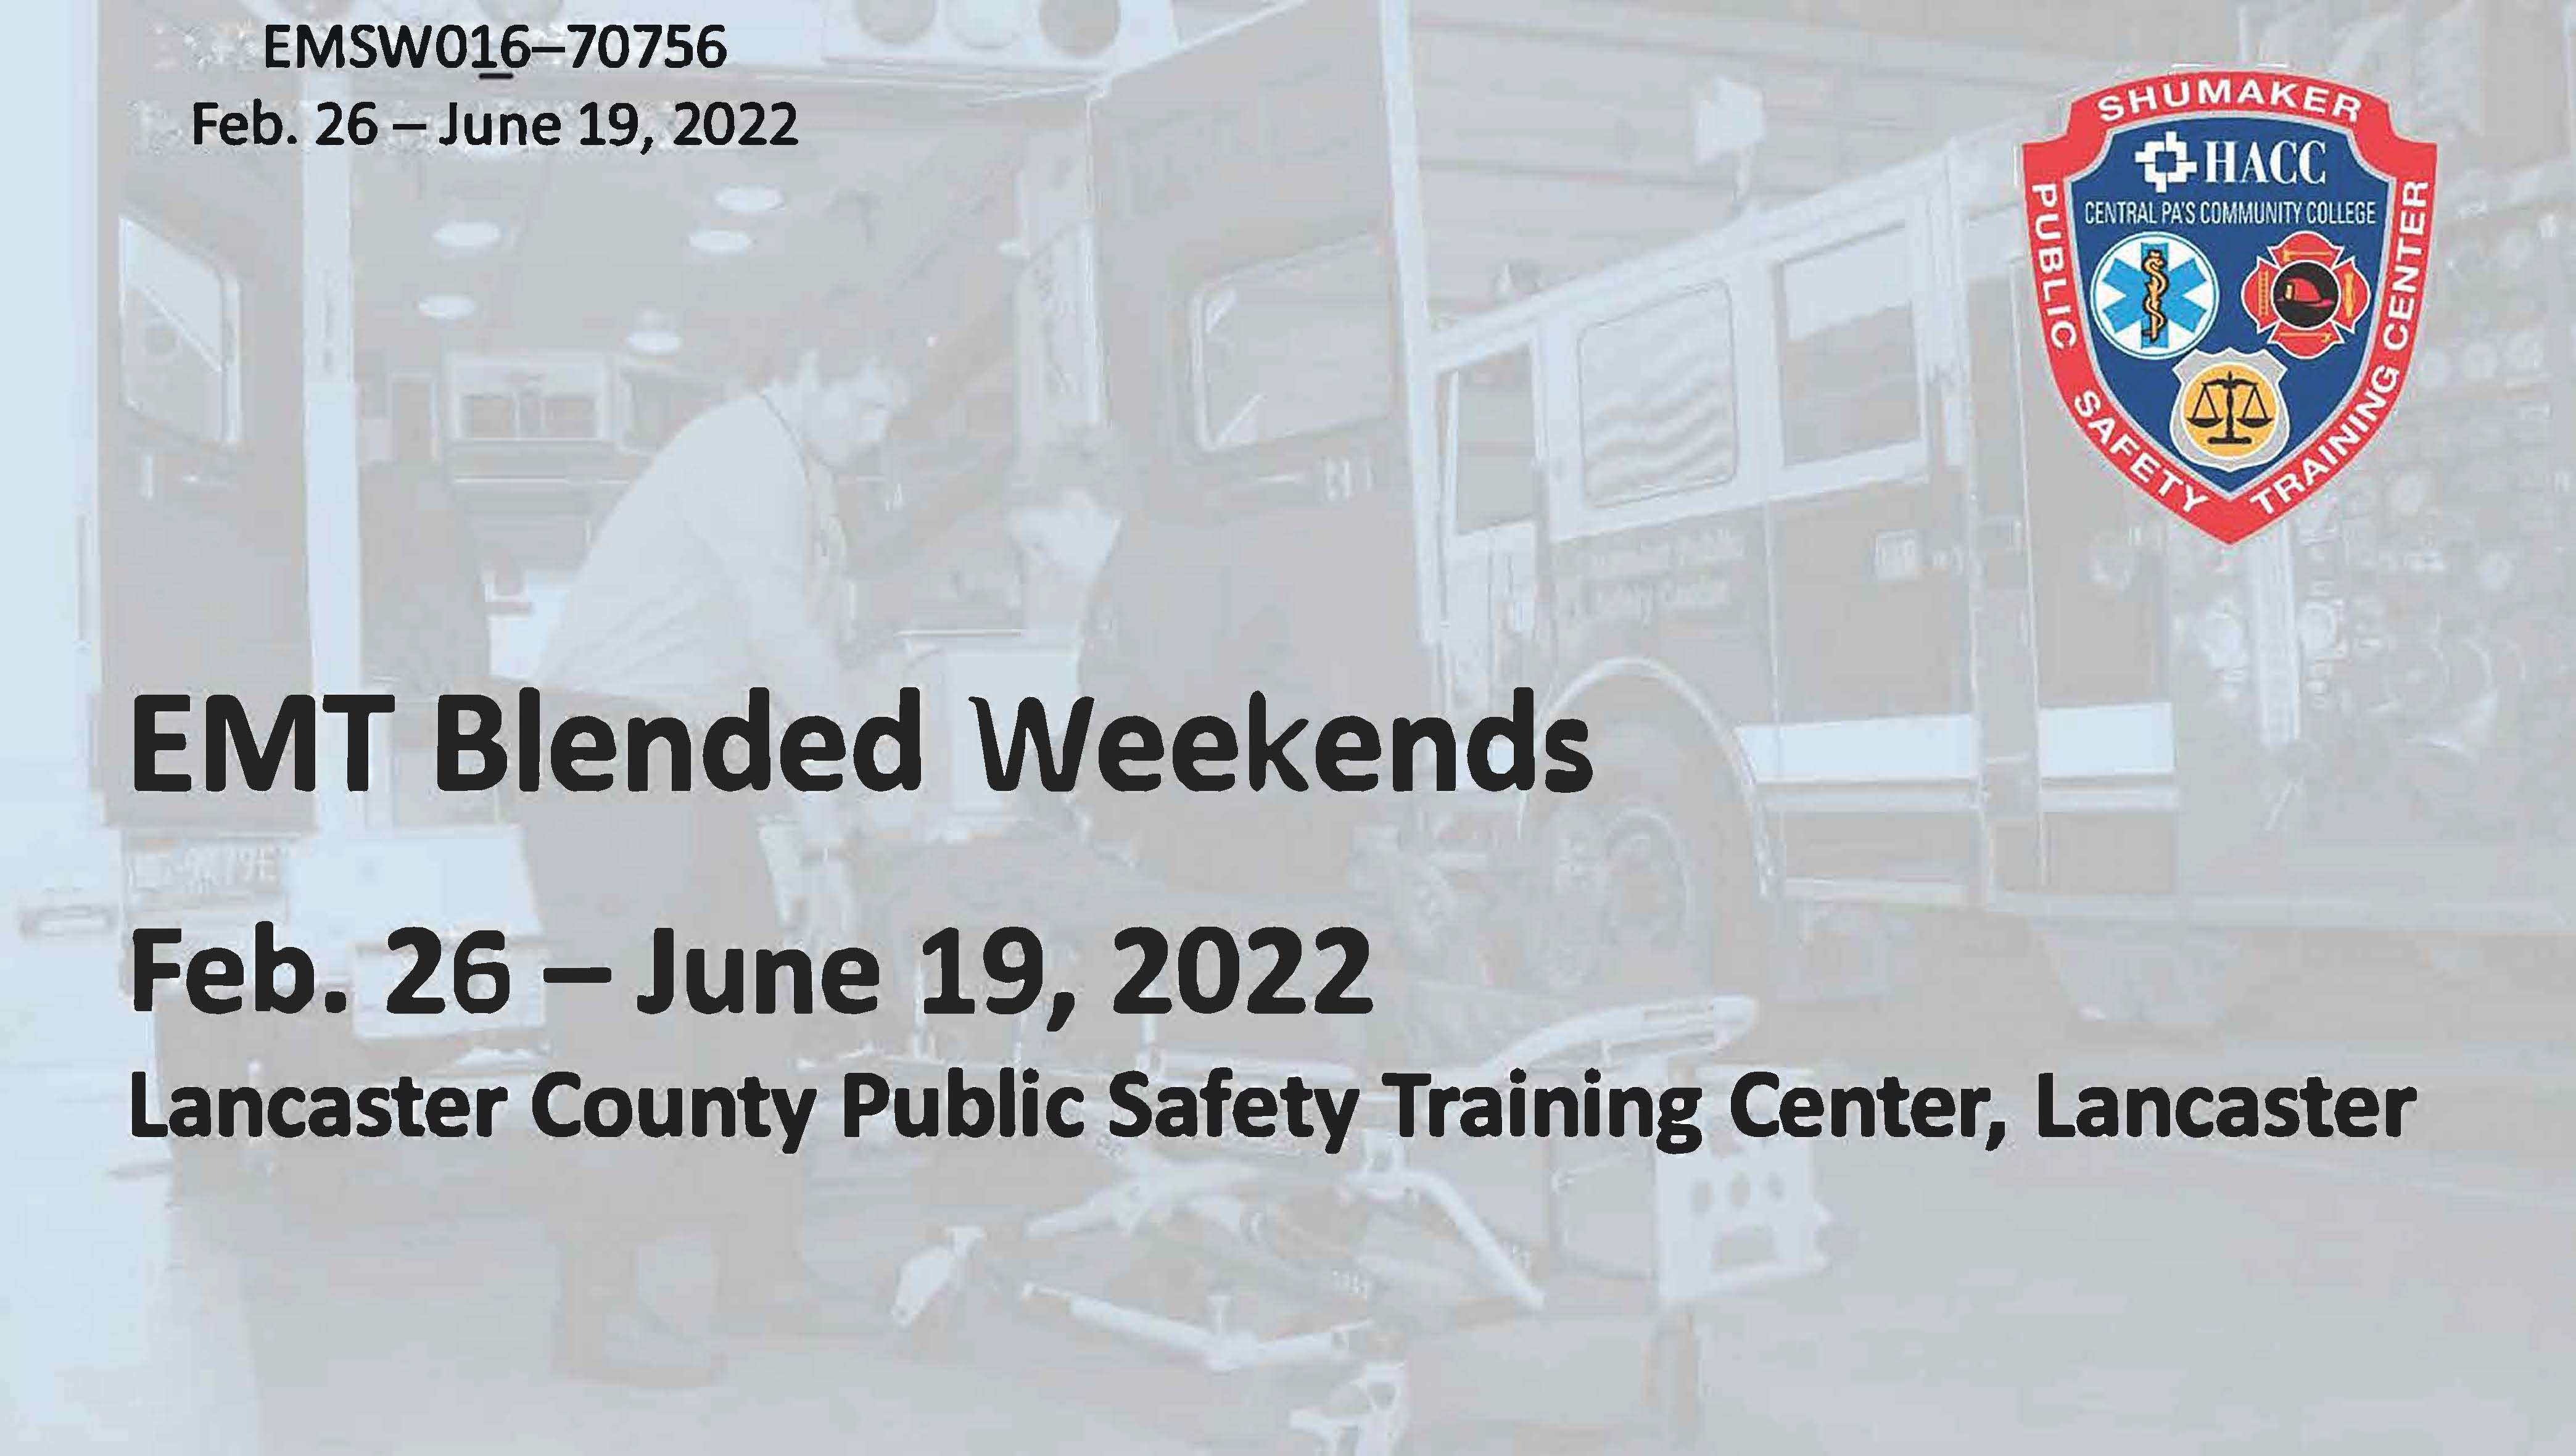 EMT Blended Weekend (EMSW016_CRN70756) Lancaster County